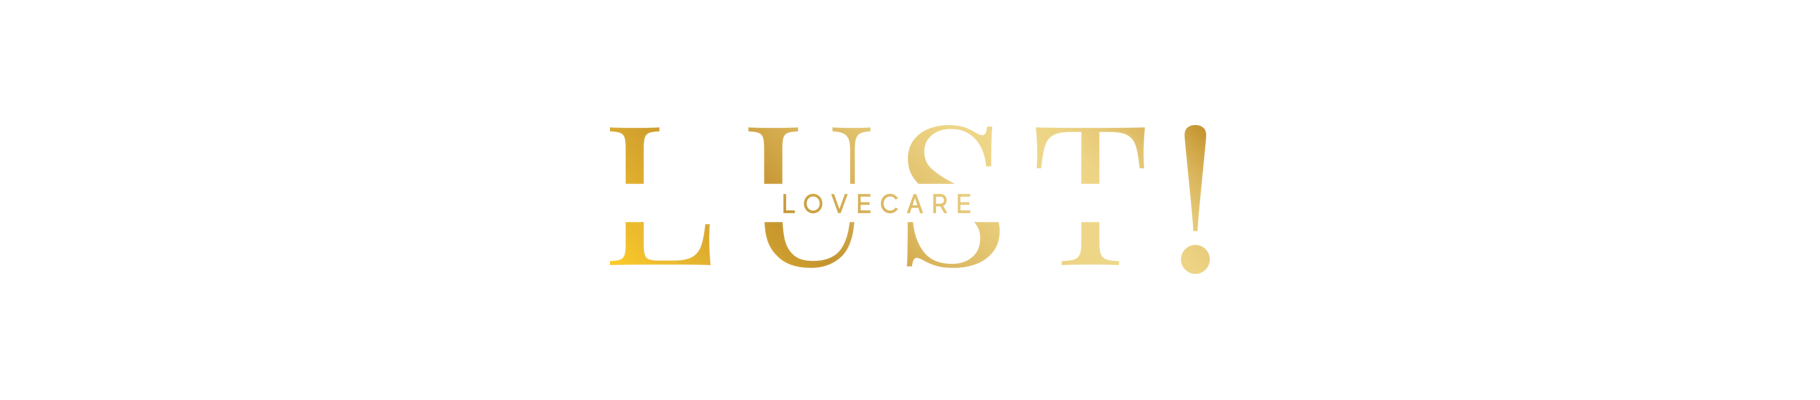 LUST! lovecare | Eestis toodetud ja arendatud libestid | Kondoomipood.ee